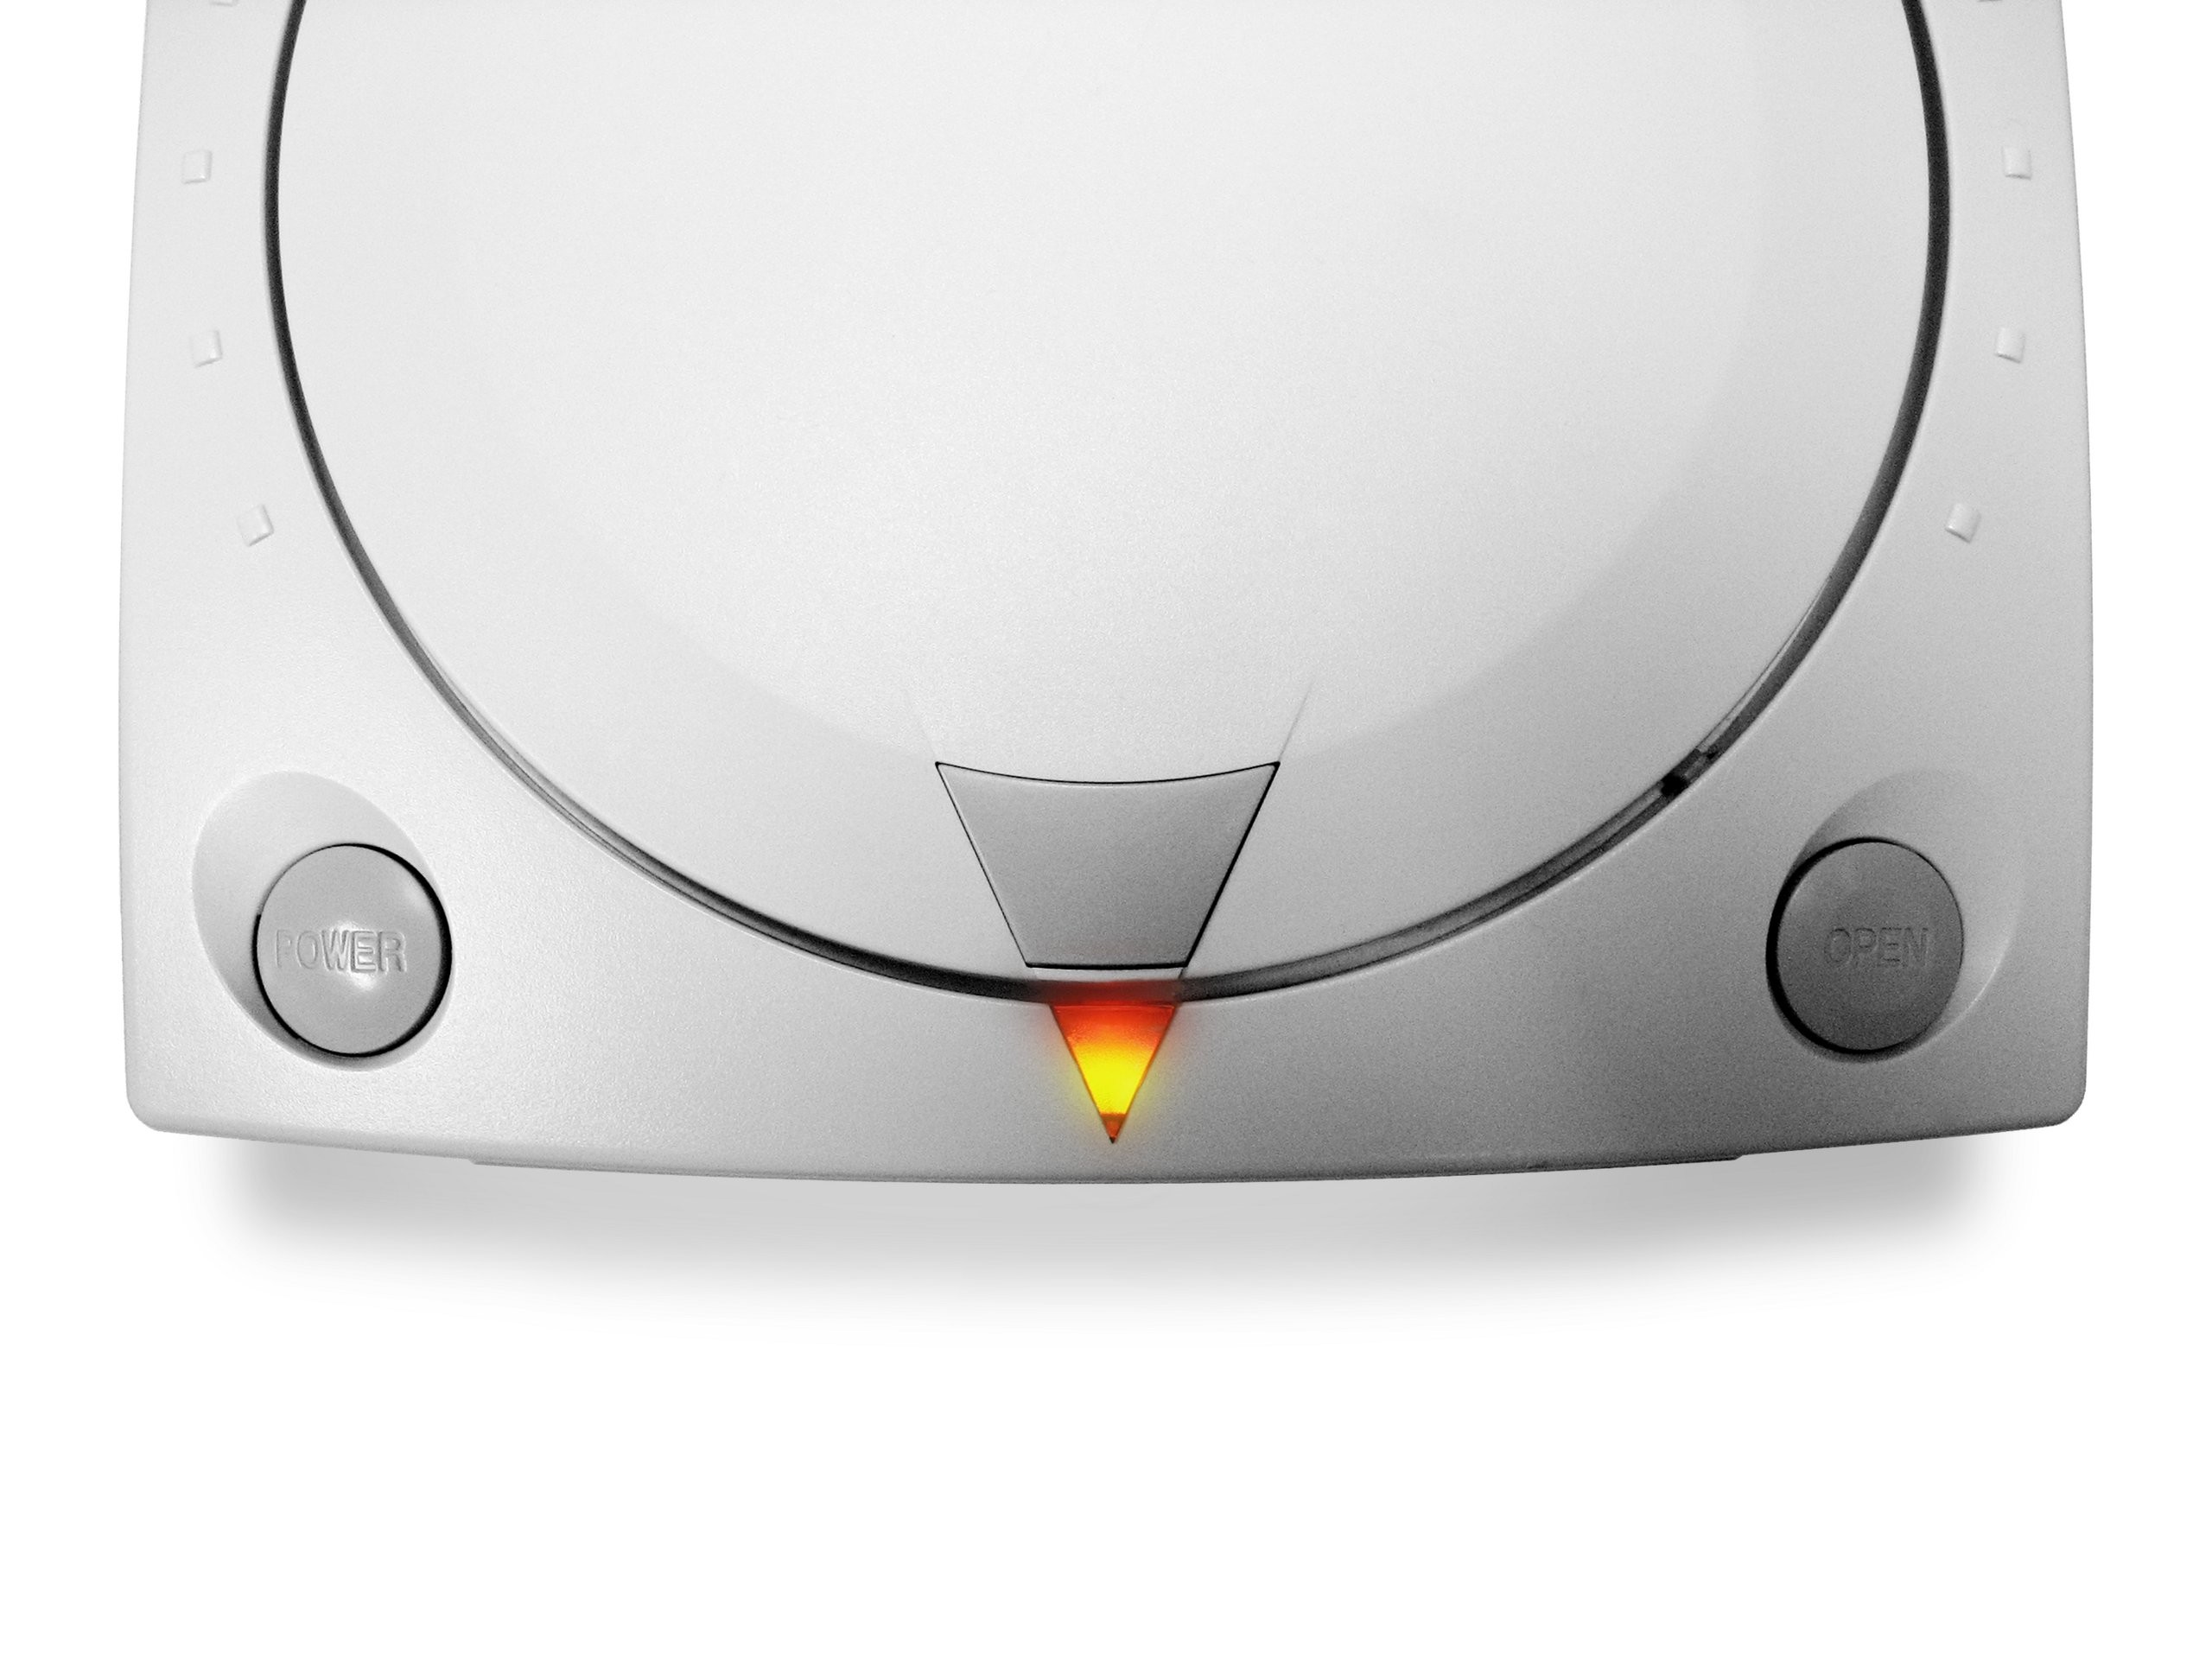 Dreamcast pics